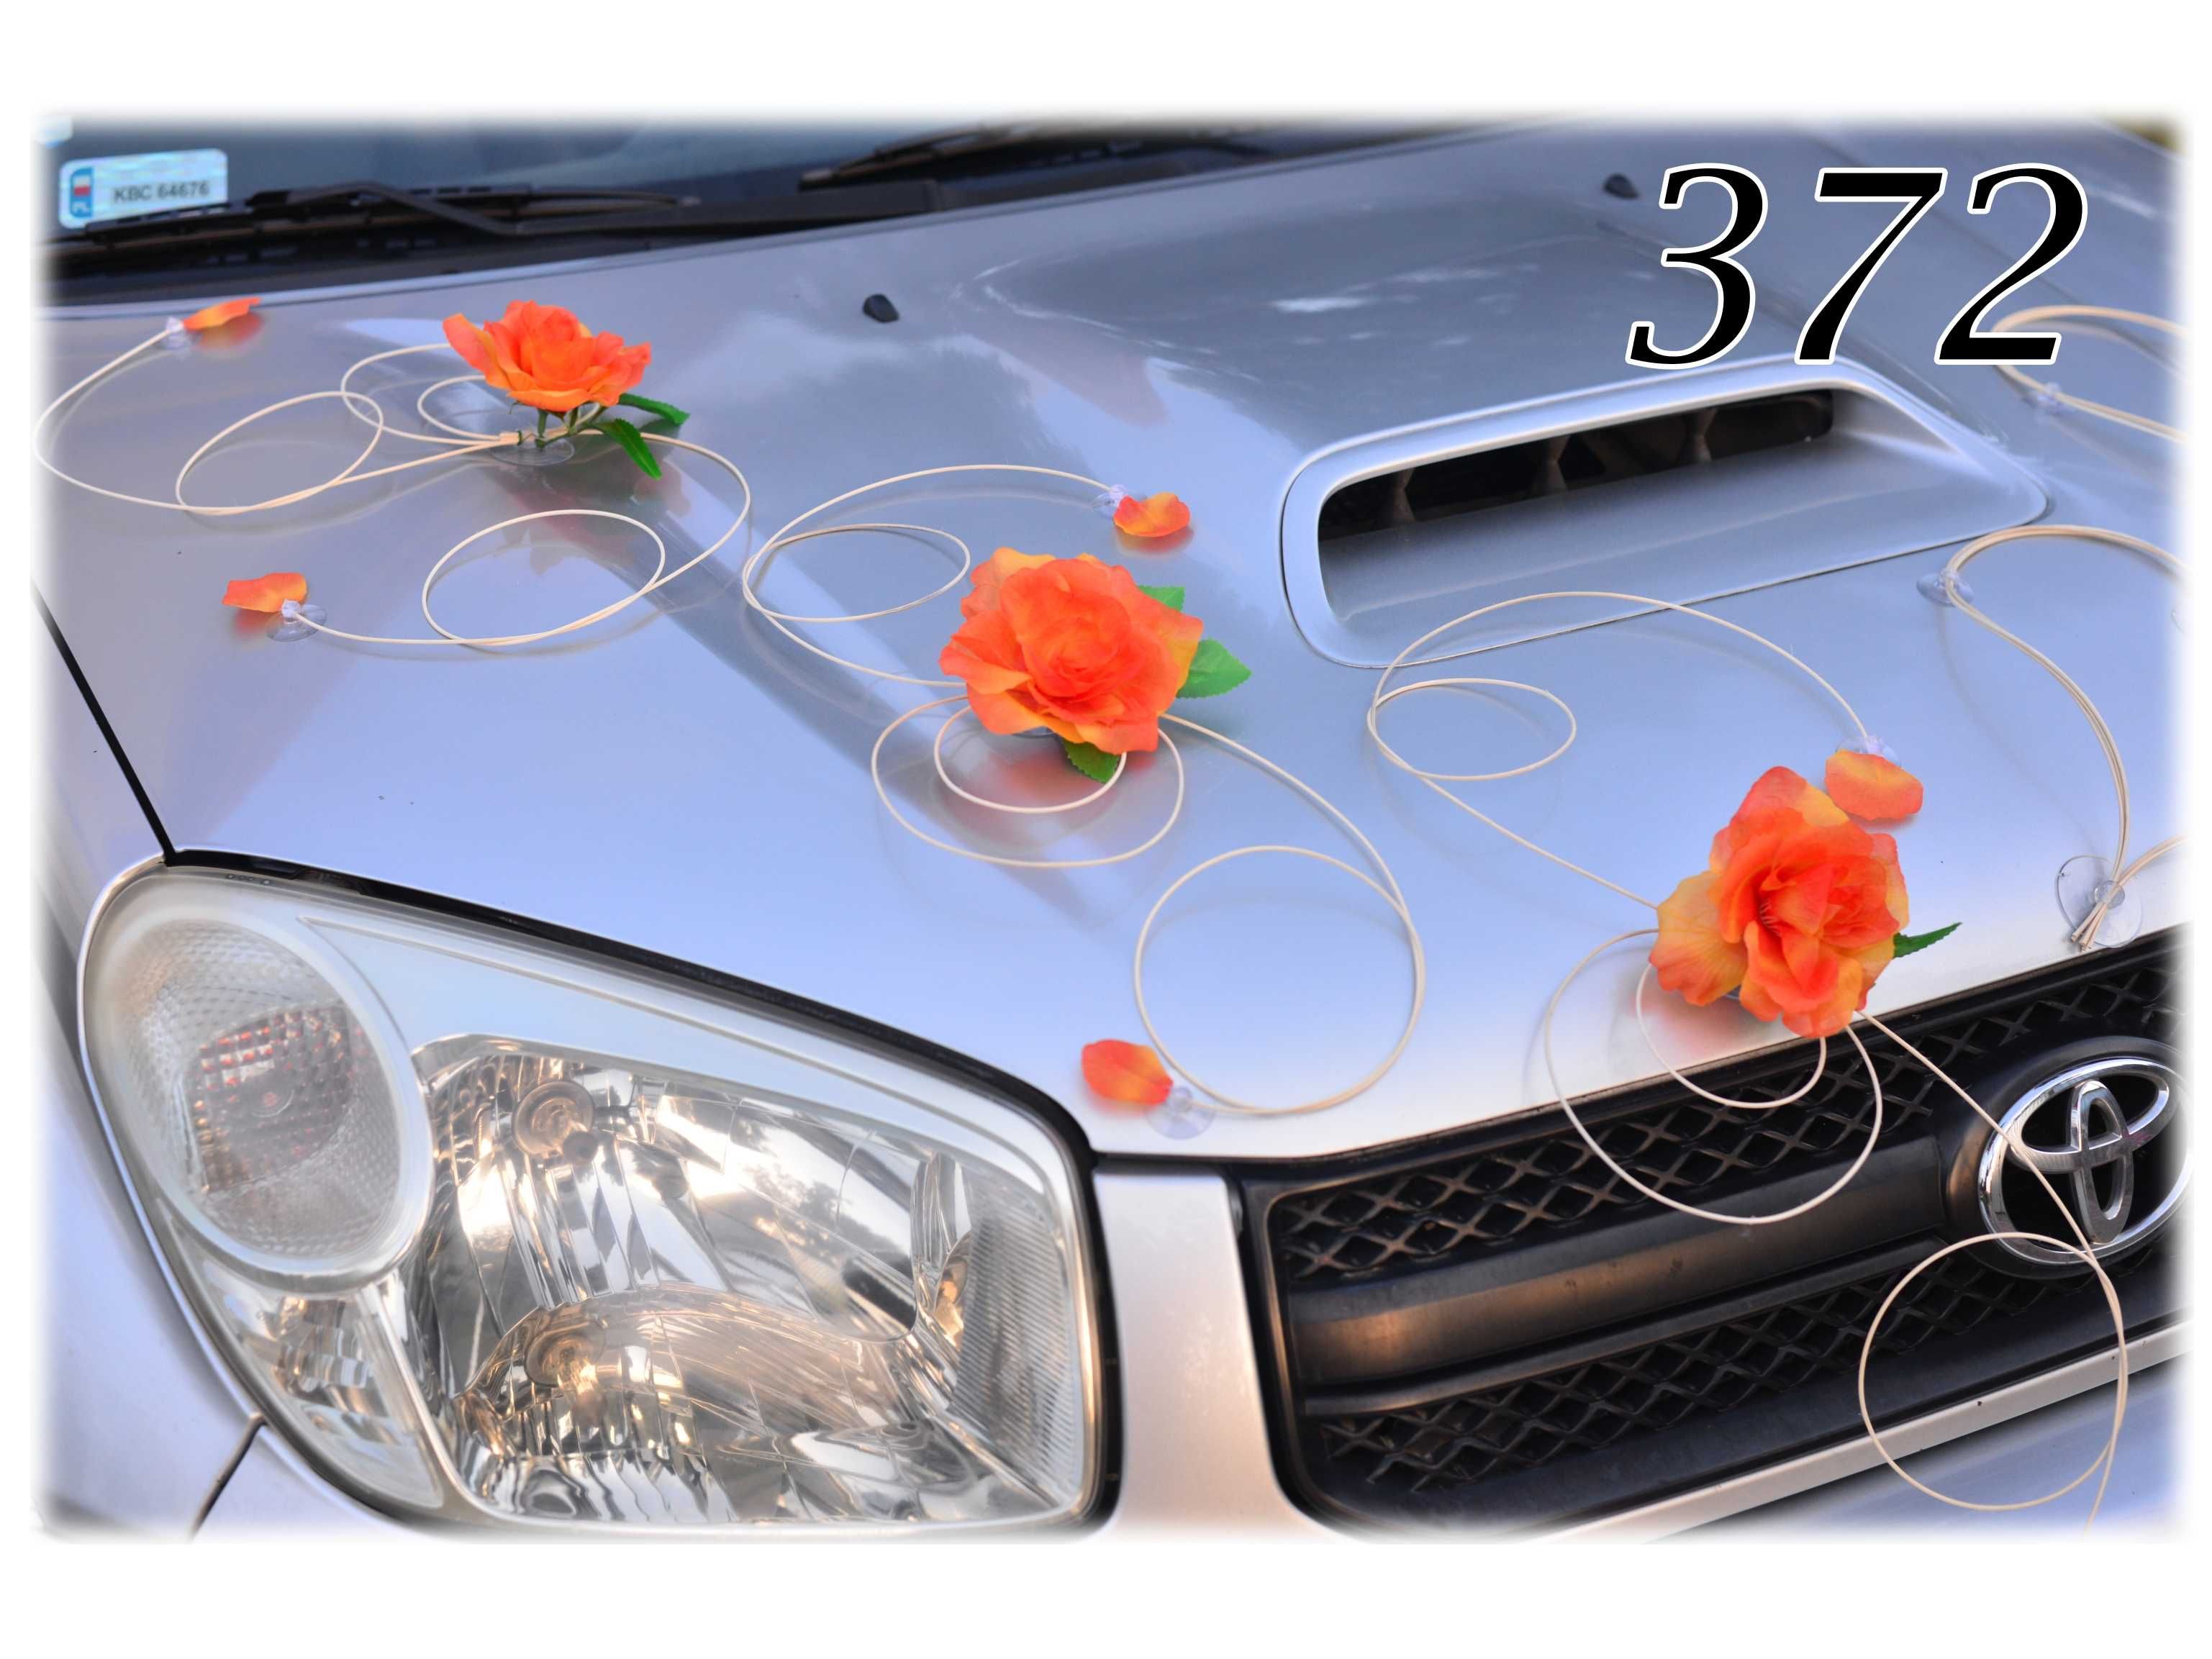 Piękna HERBACIANA dekoracja ozdoba na auto samochód ślubny Nr 372